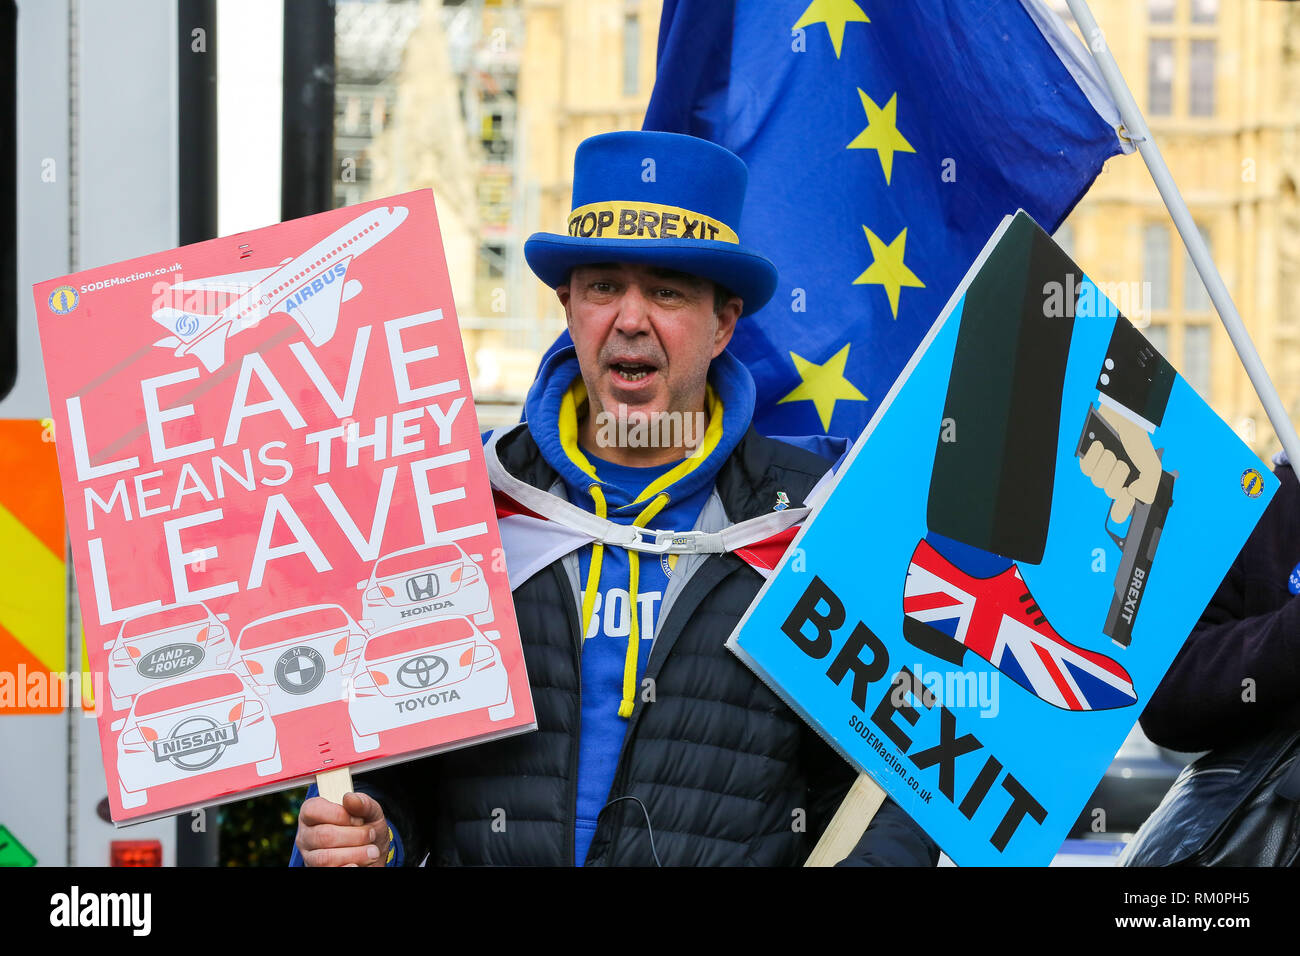 Steven Bray fondateur de SODEM (Stand de Défi Mouvement européen) vu avec des pancartes lors d'un Brexit anti-protestation devant Downing Street à Londres. Banque D'Images